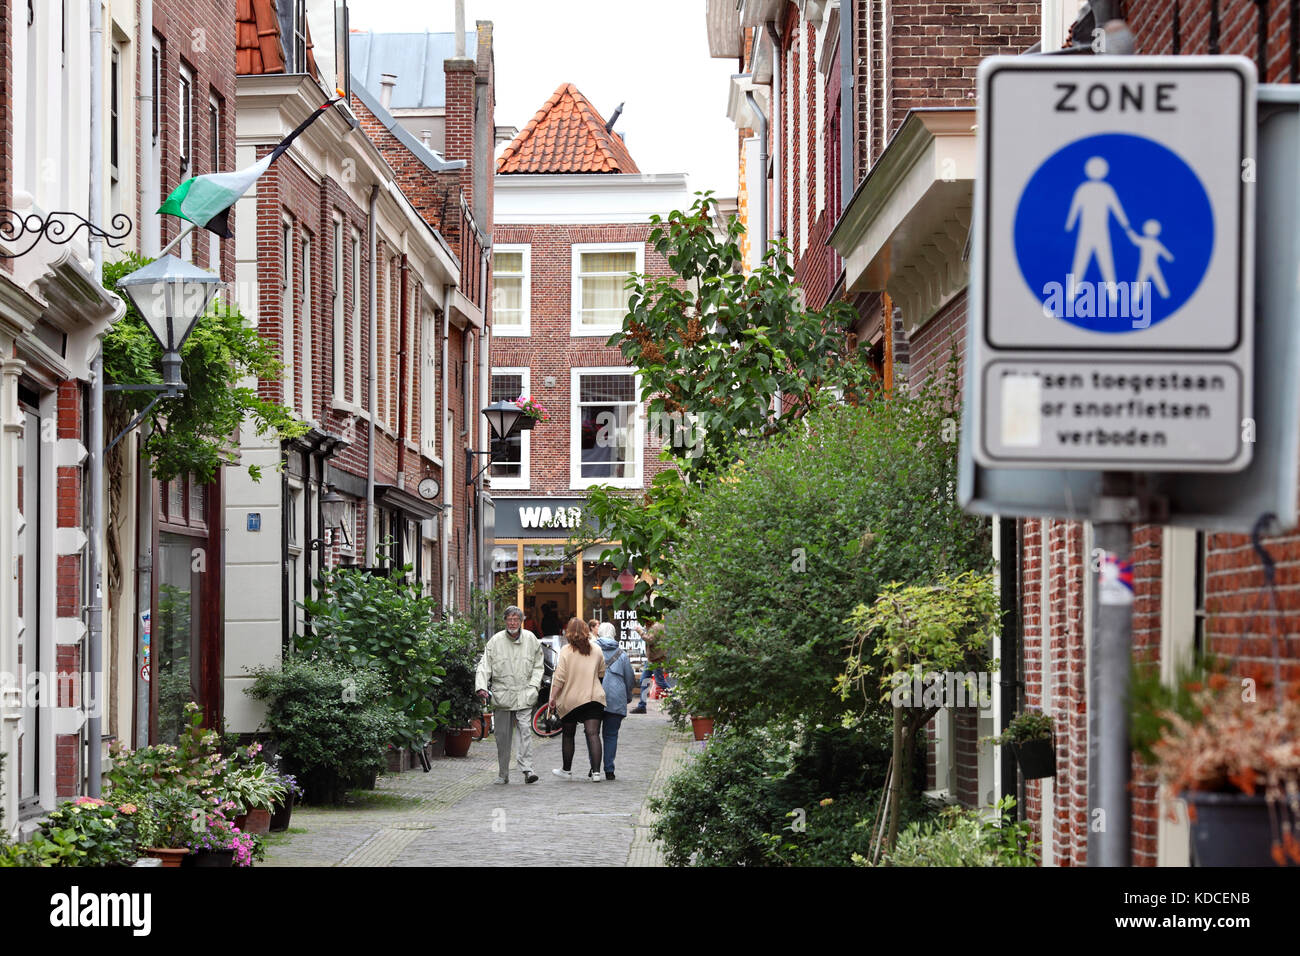 Ein blaues "Fußgängerzone" Schild zeigt an einer verkehrsberuhigten Seitenstraße in Haarlem, Nord Holland, Niederlande. Stockfoto